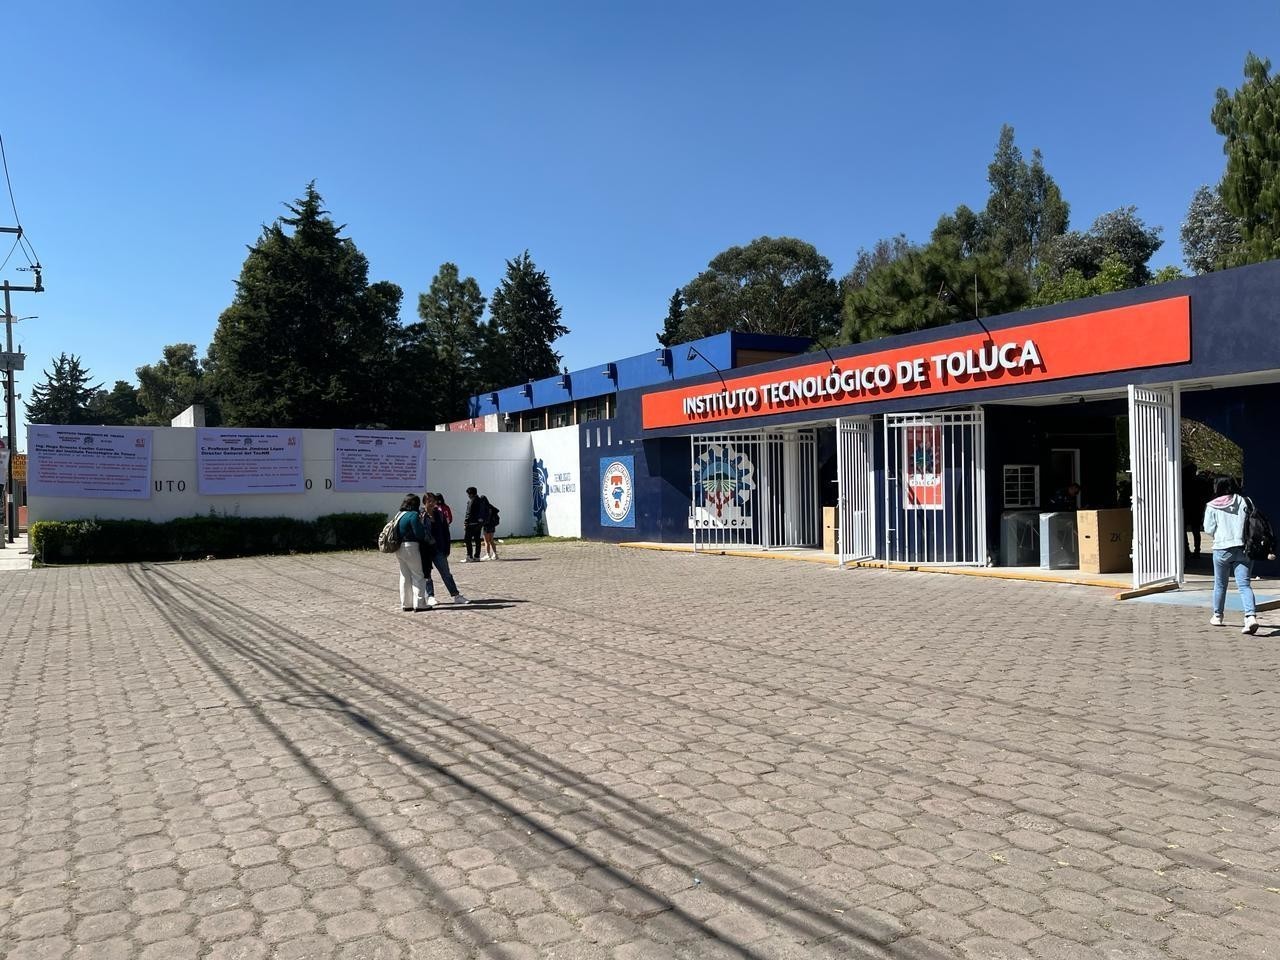 Este lunes, alumnas y alumnos del Instituto Tecnológico de Toluca se quedaron sin clases debido a un paro de docentes y trabajadores sindicalizados. Imagen: POSTA